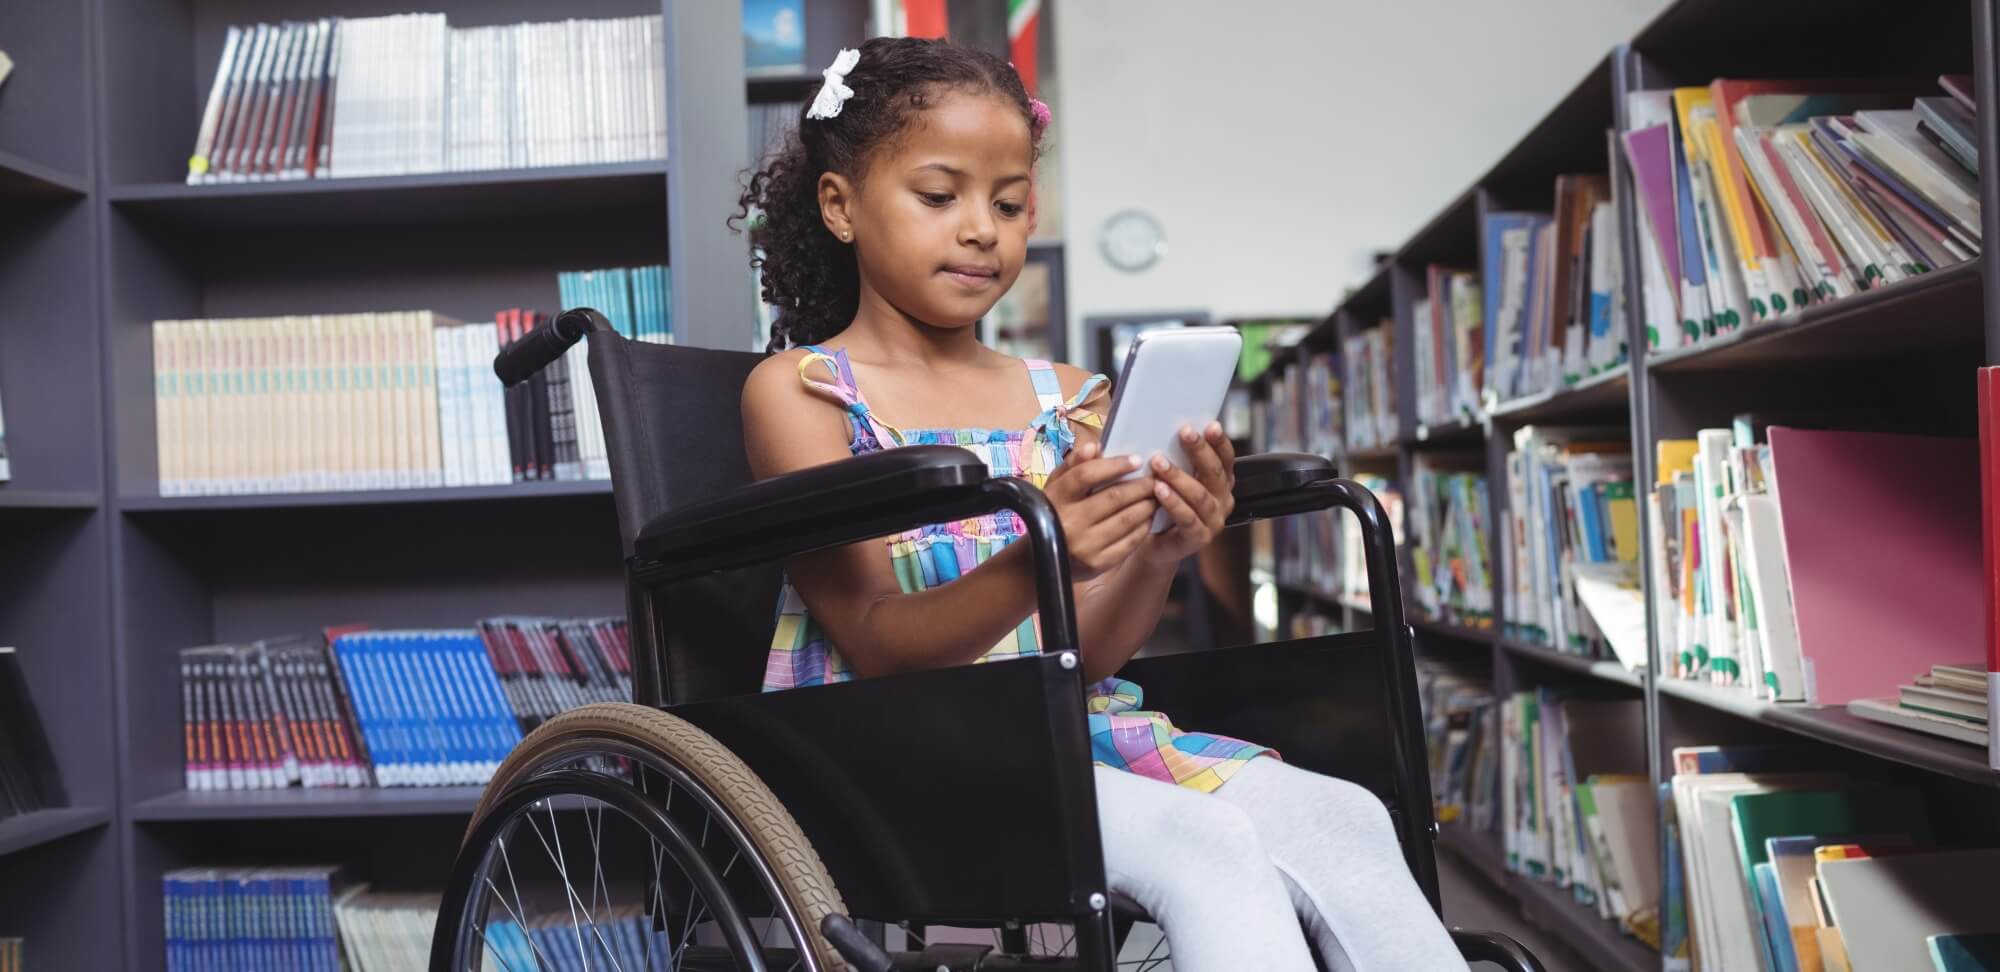 Os desafios da inclusão escolar no cotidiano da escola regular: fotografia de uma menina em uma cadeira de rodas utilizando um tablet em uma biblioteca.